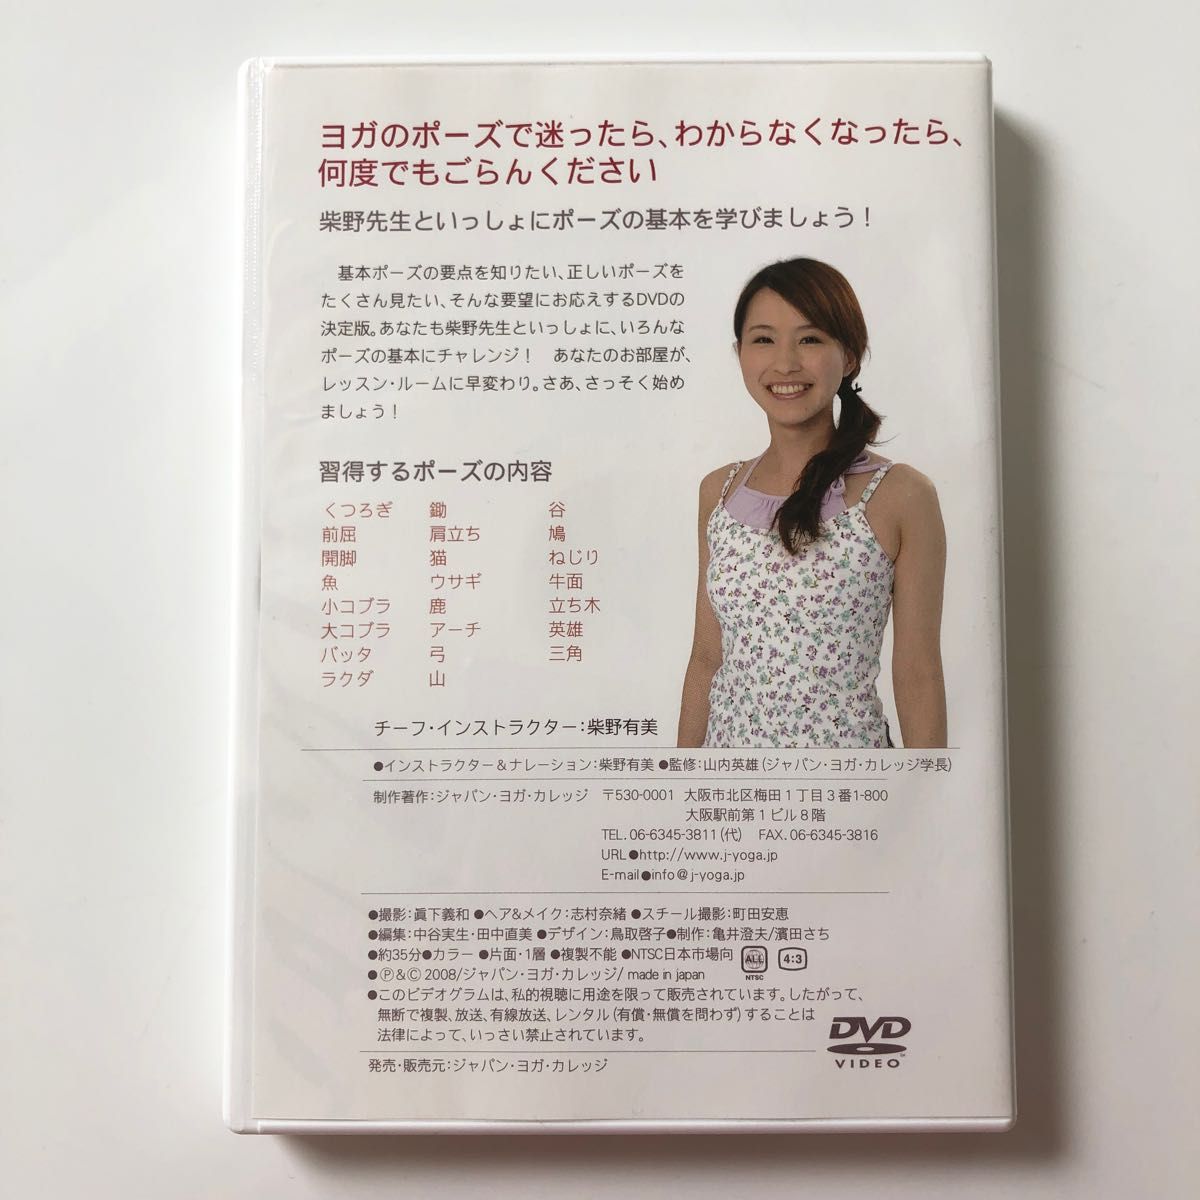 ART&BEAUTY J-YOGA ポーズ集 DVD